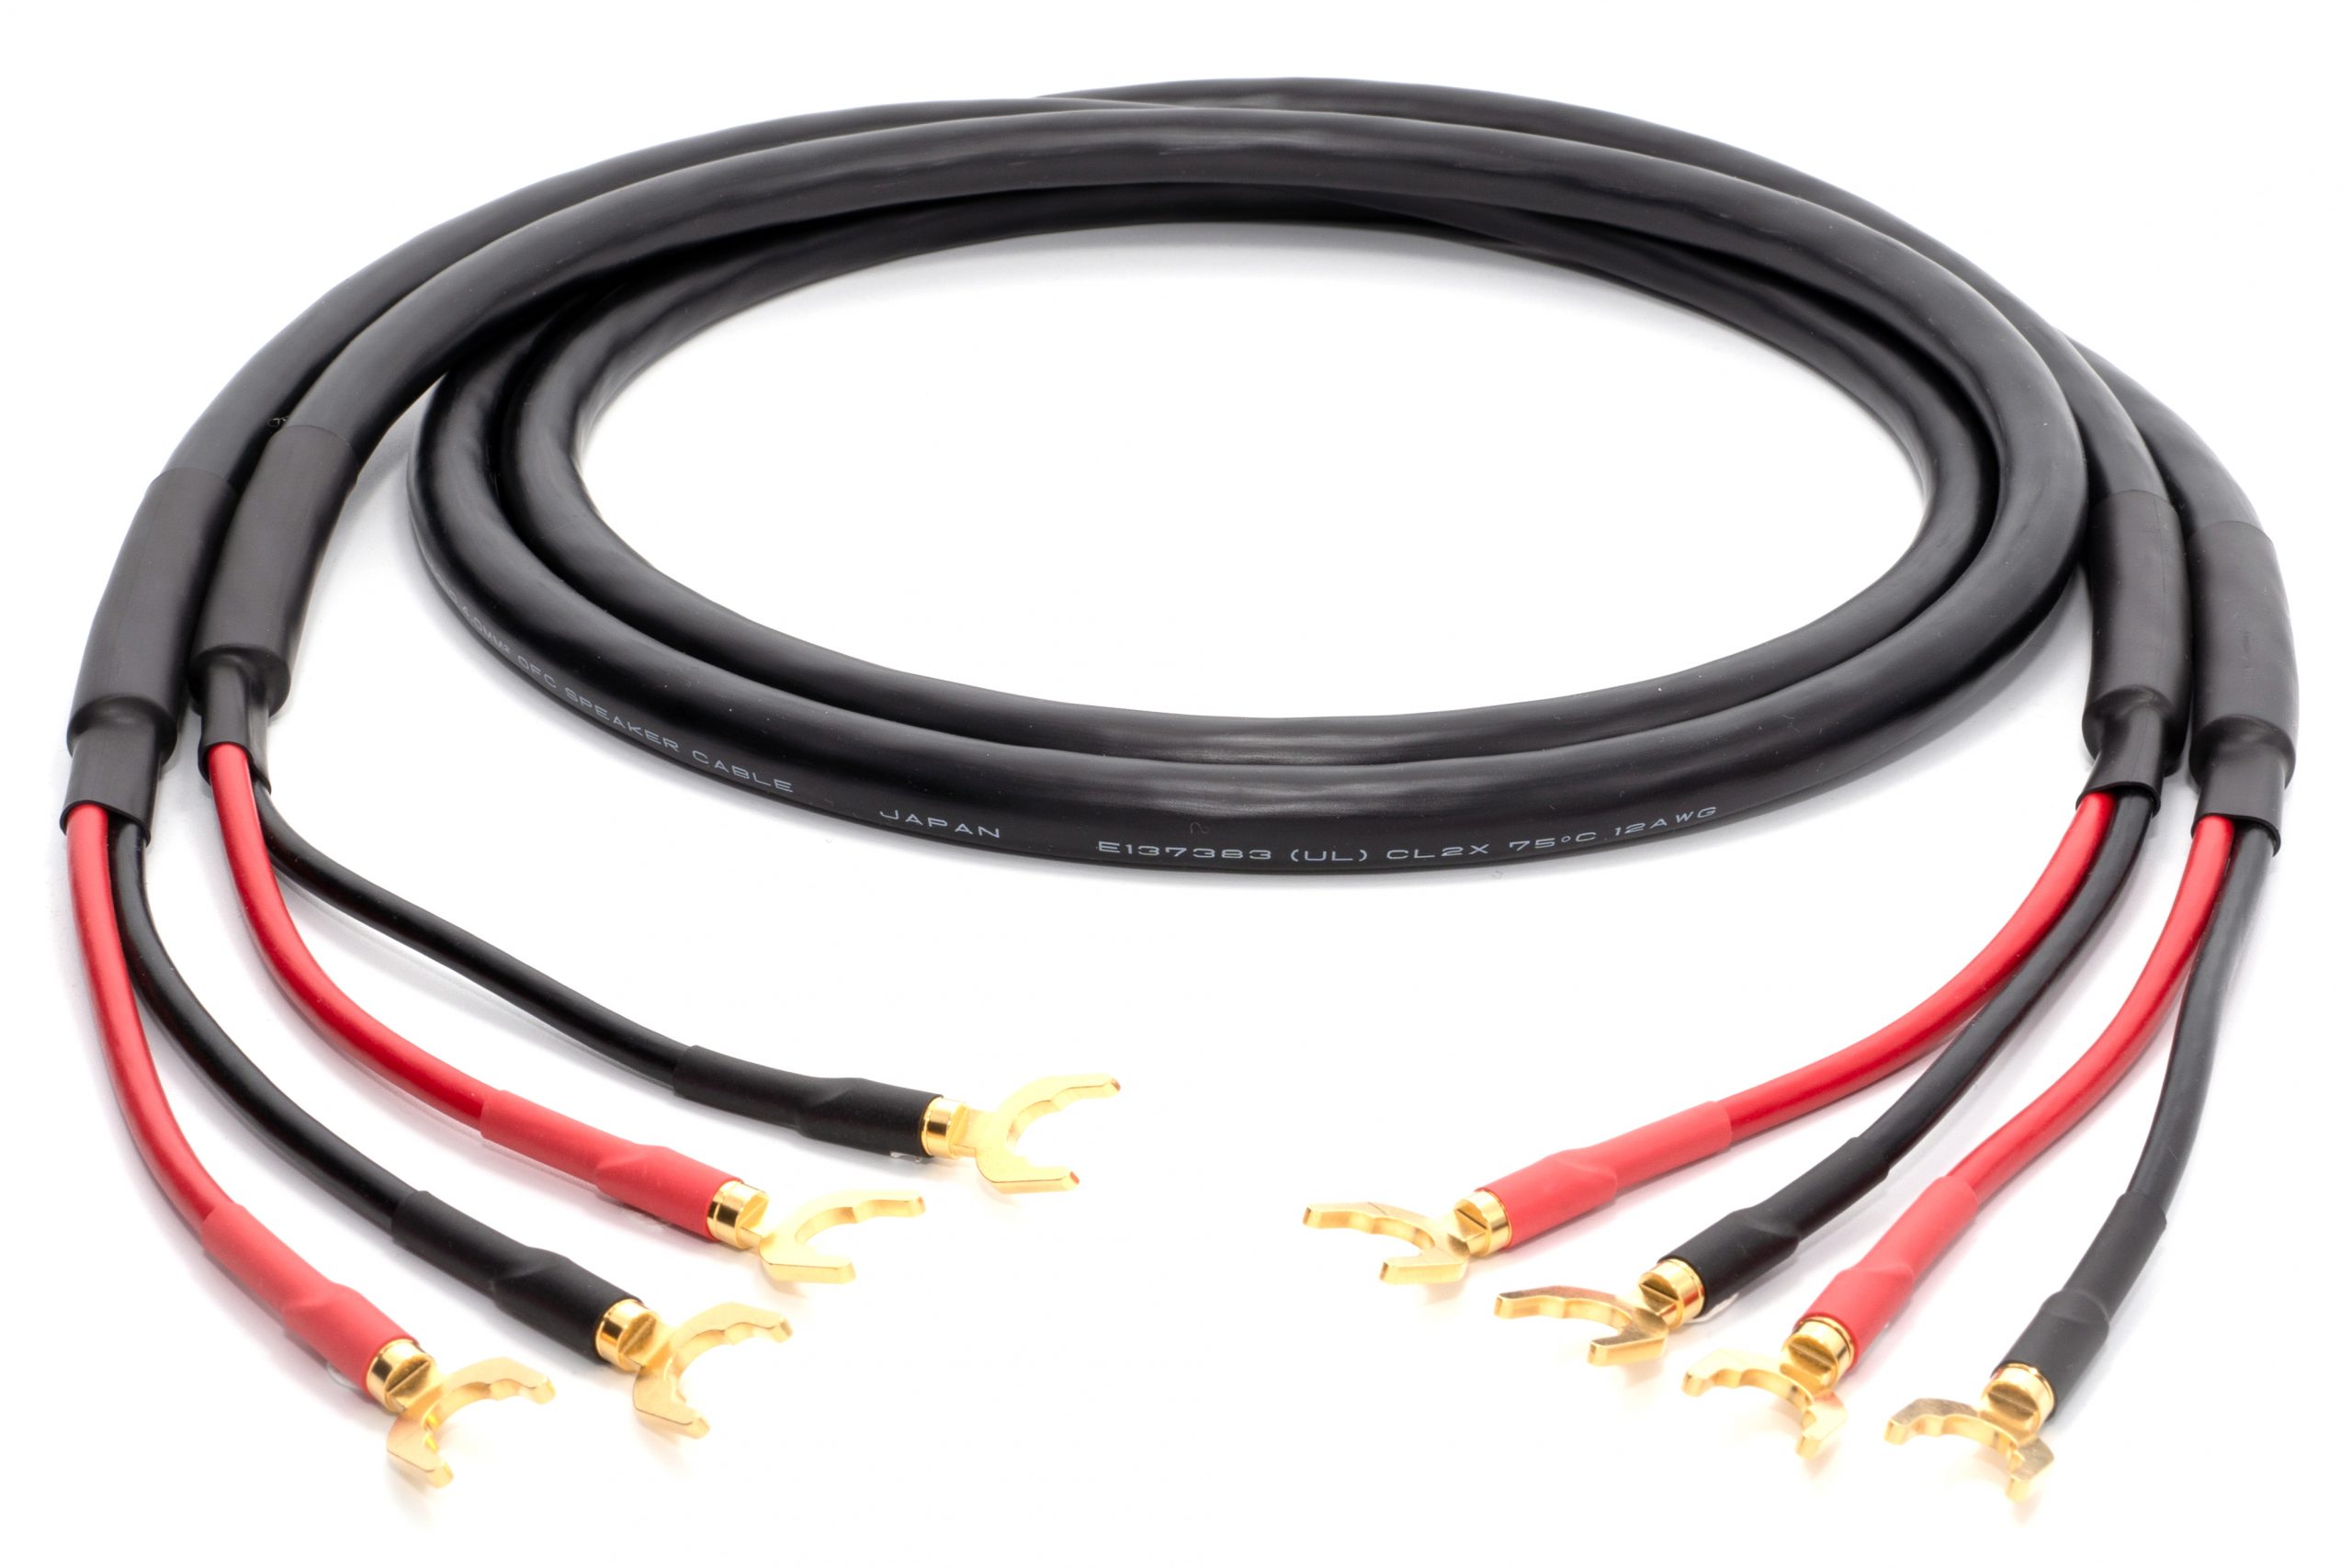 Gabelkabelschuh für 4qmm Kabel bei Carhifi-Design kaufen, 1,09 €